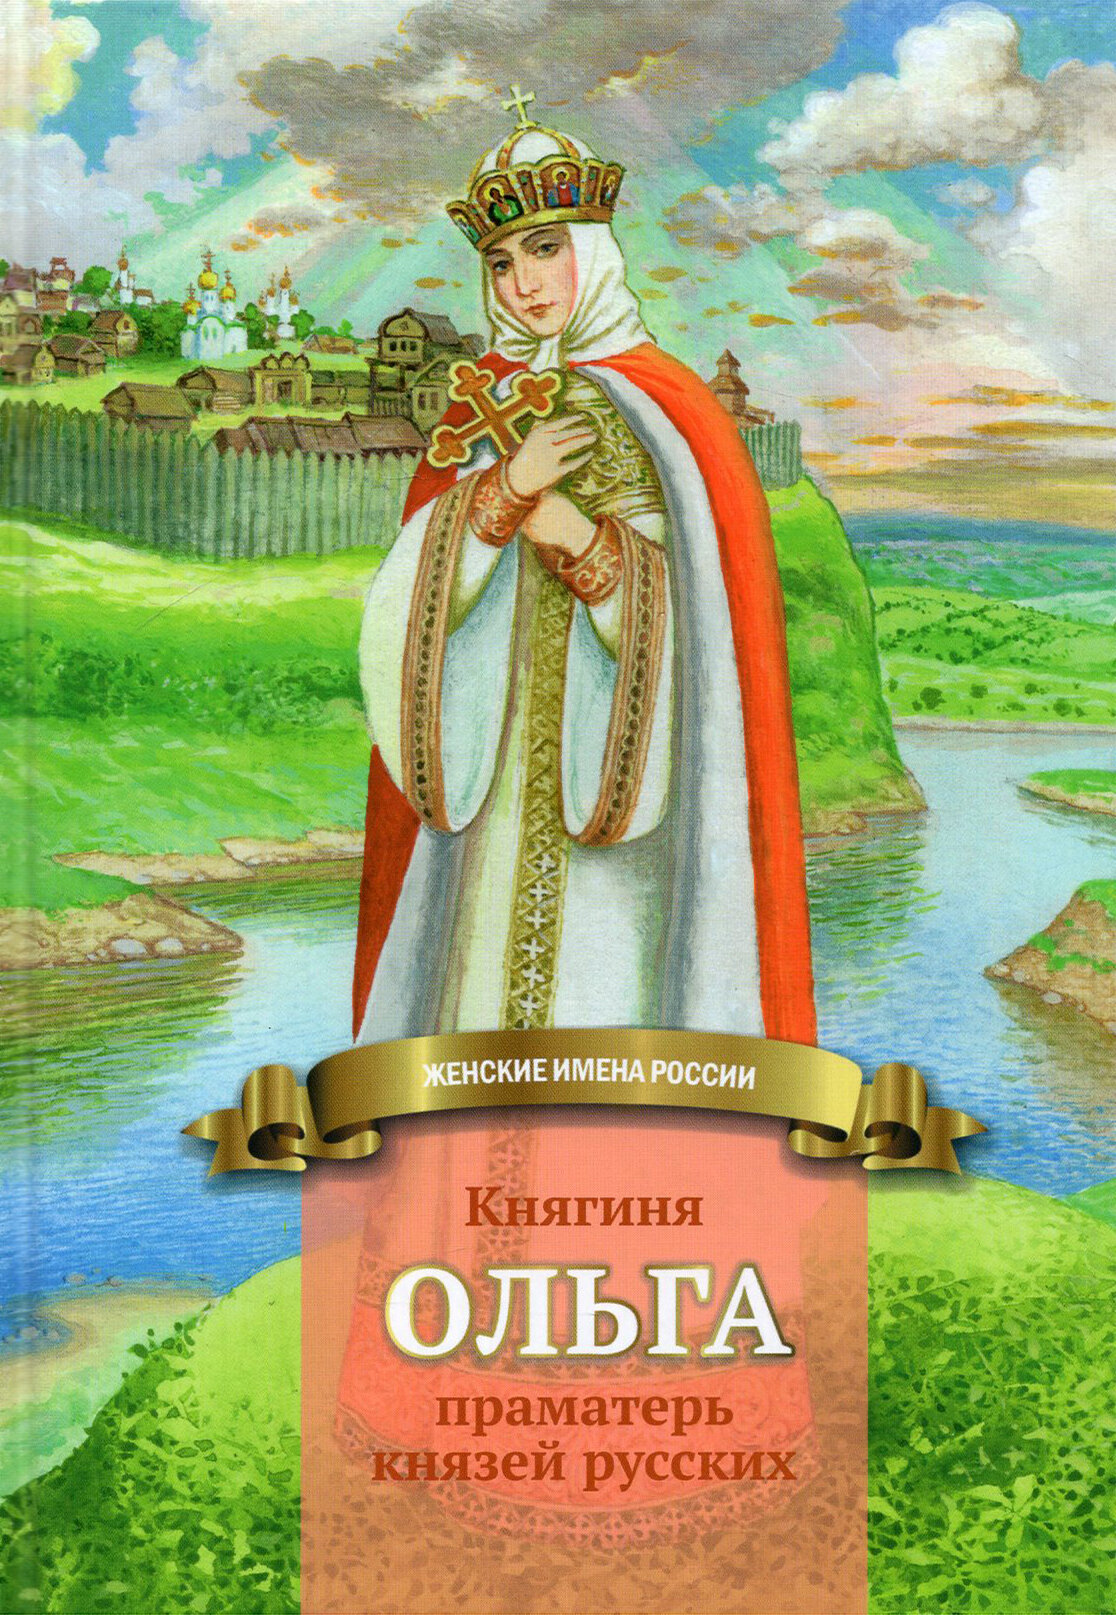 Княгиня Ольга праматерь князей русских - фото №12